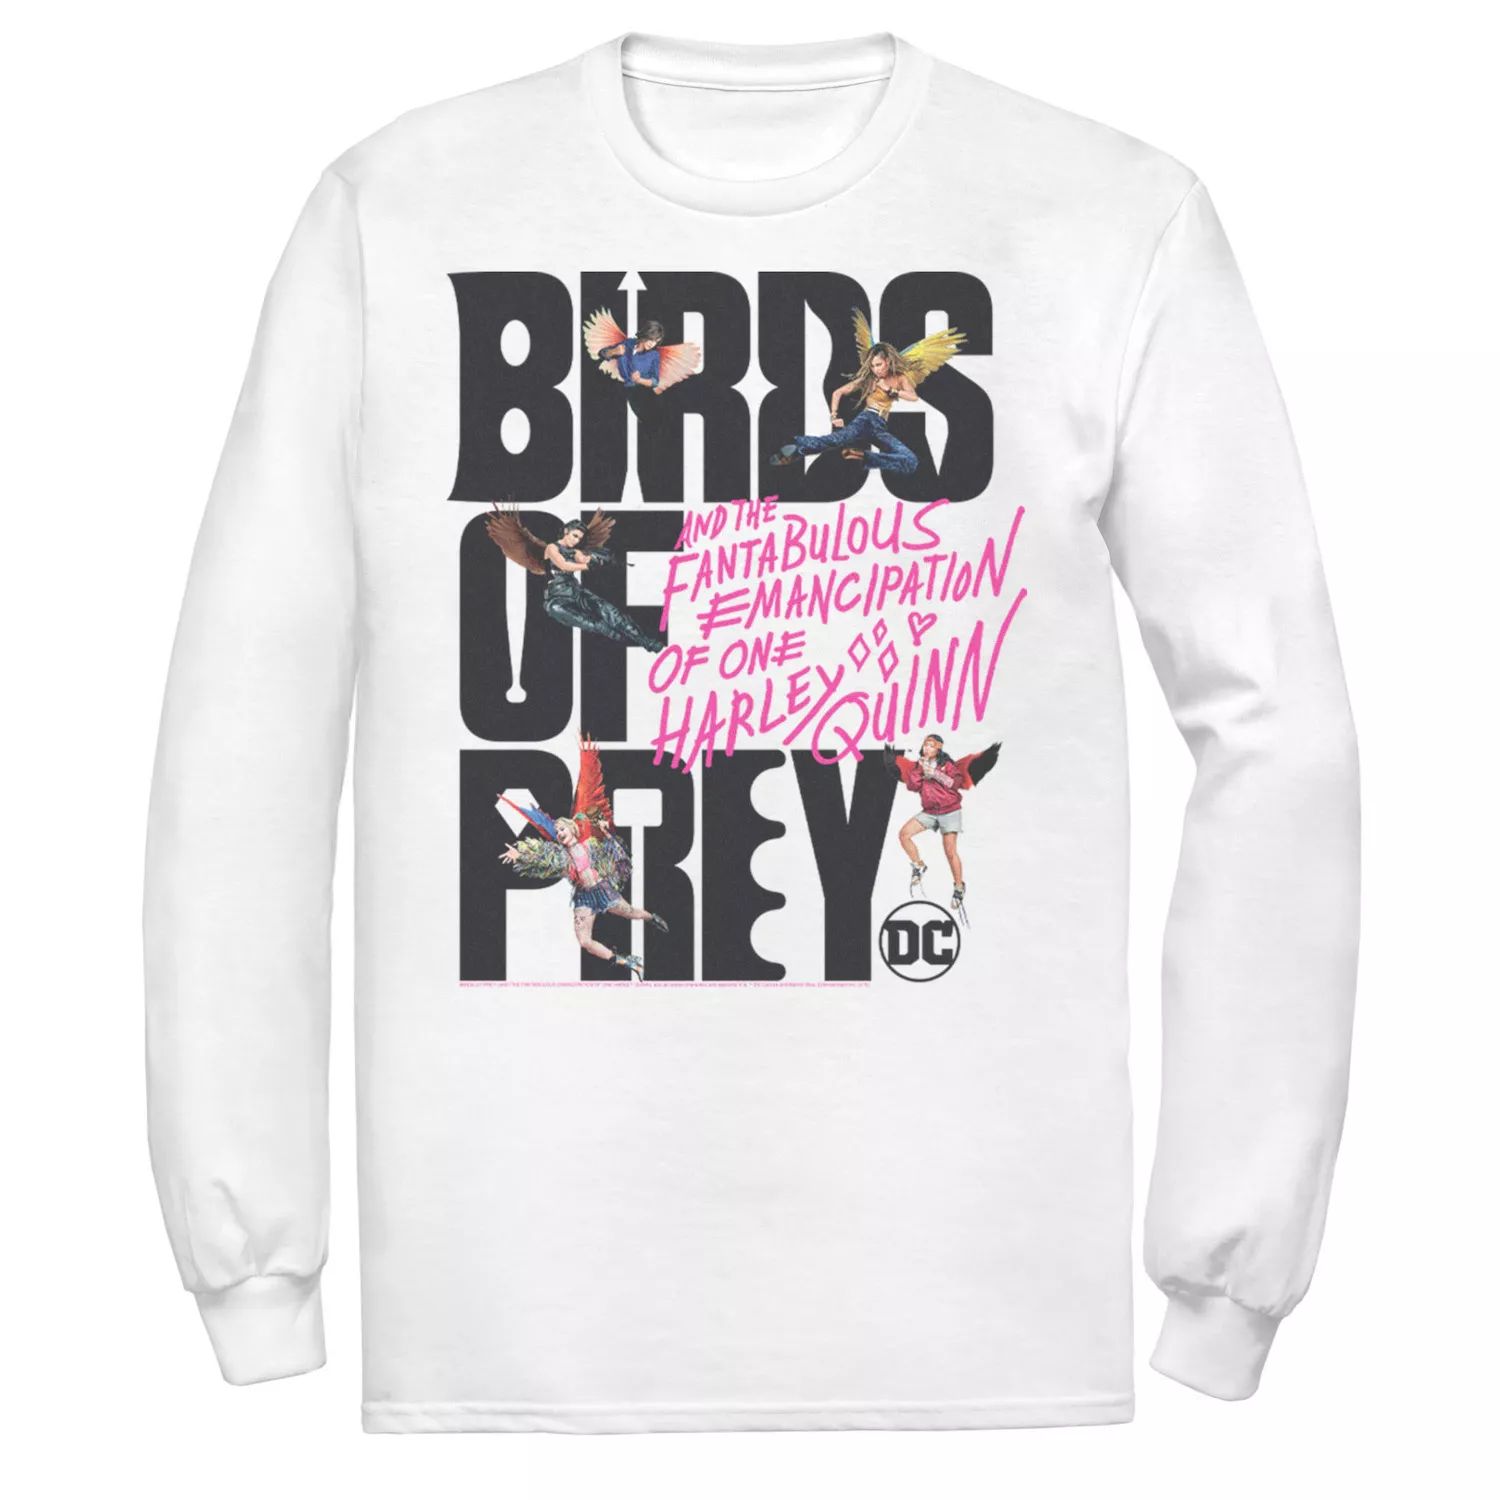 Мужская футболка с надписью «Хищные птицы» и коллажем DC Comics наклейка патч для одежды dc хищные птицы 2